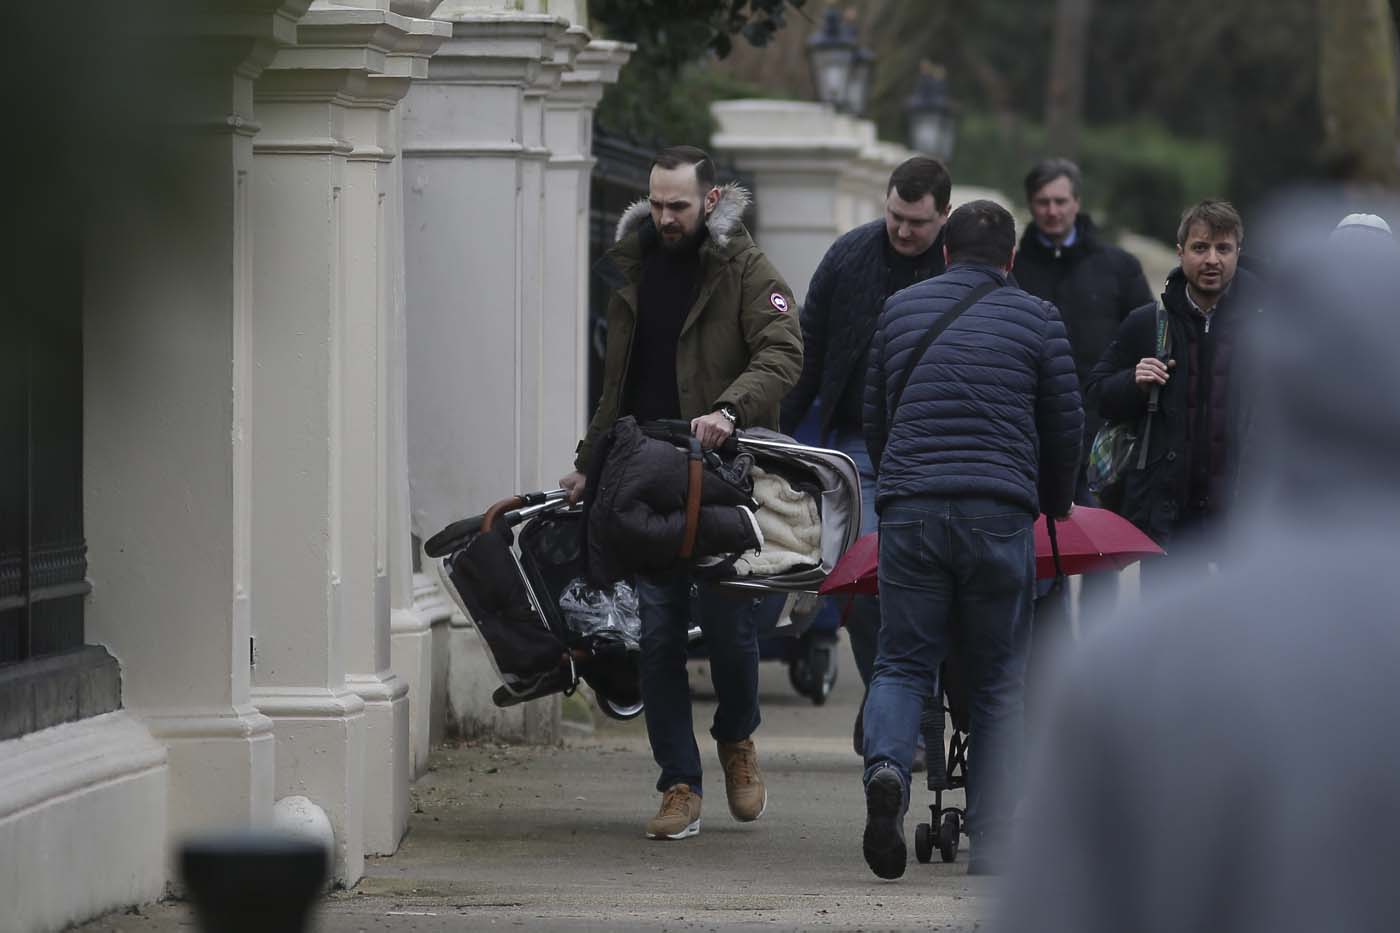 Diplomáticos rusos expulsados abandonan embajada en Londres (fotos)